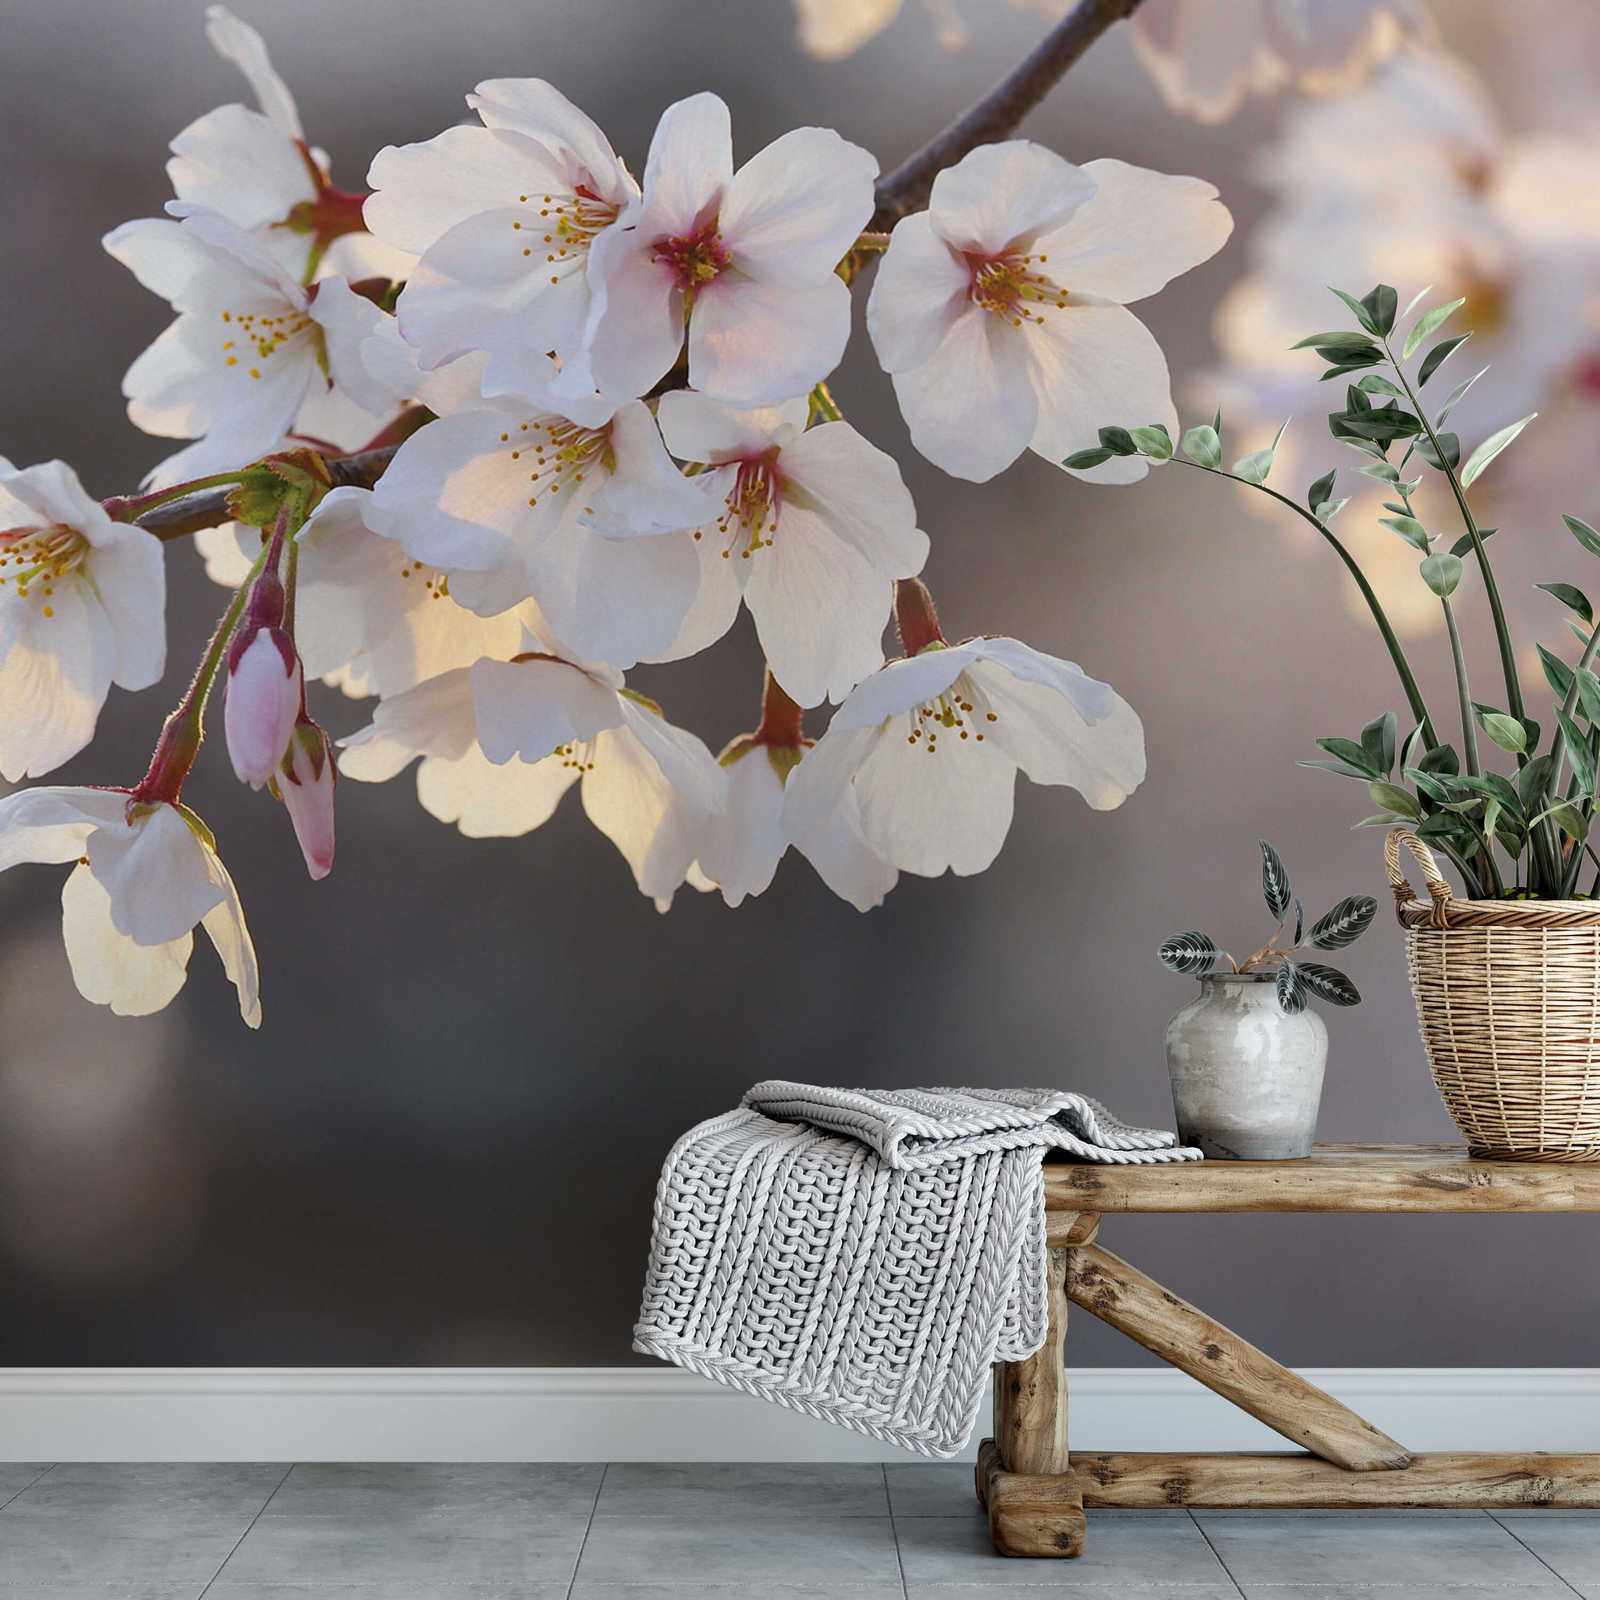             Fototapete Kirschblüten – Weiß, Rosa, Braun
        